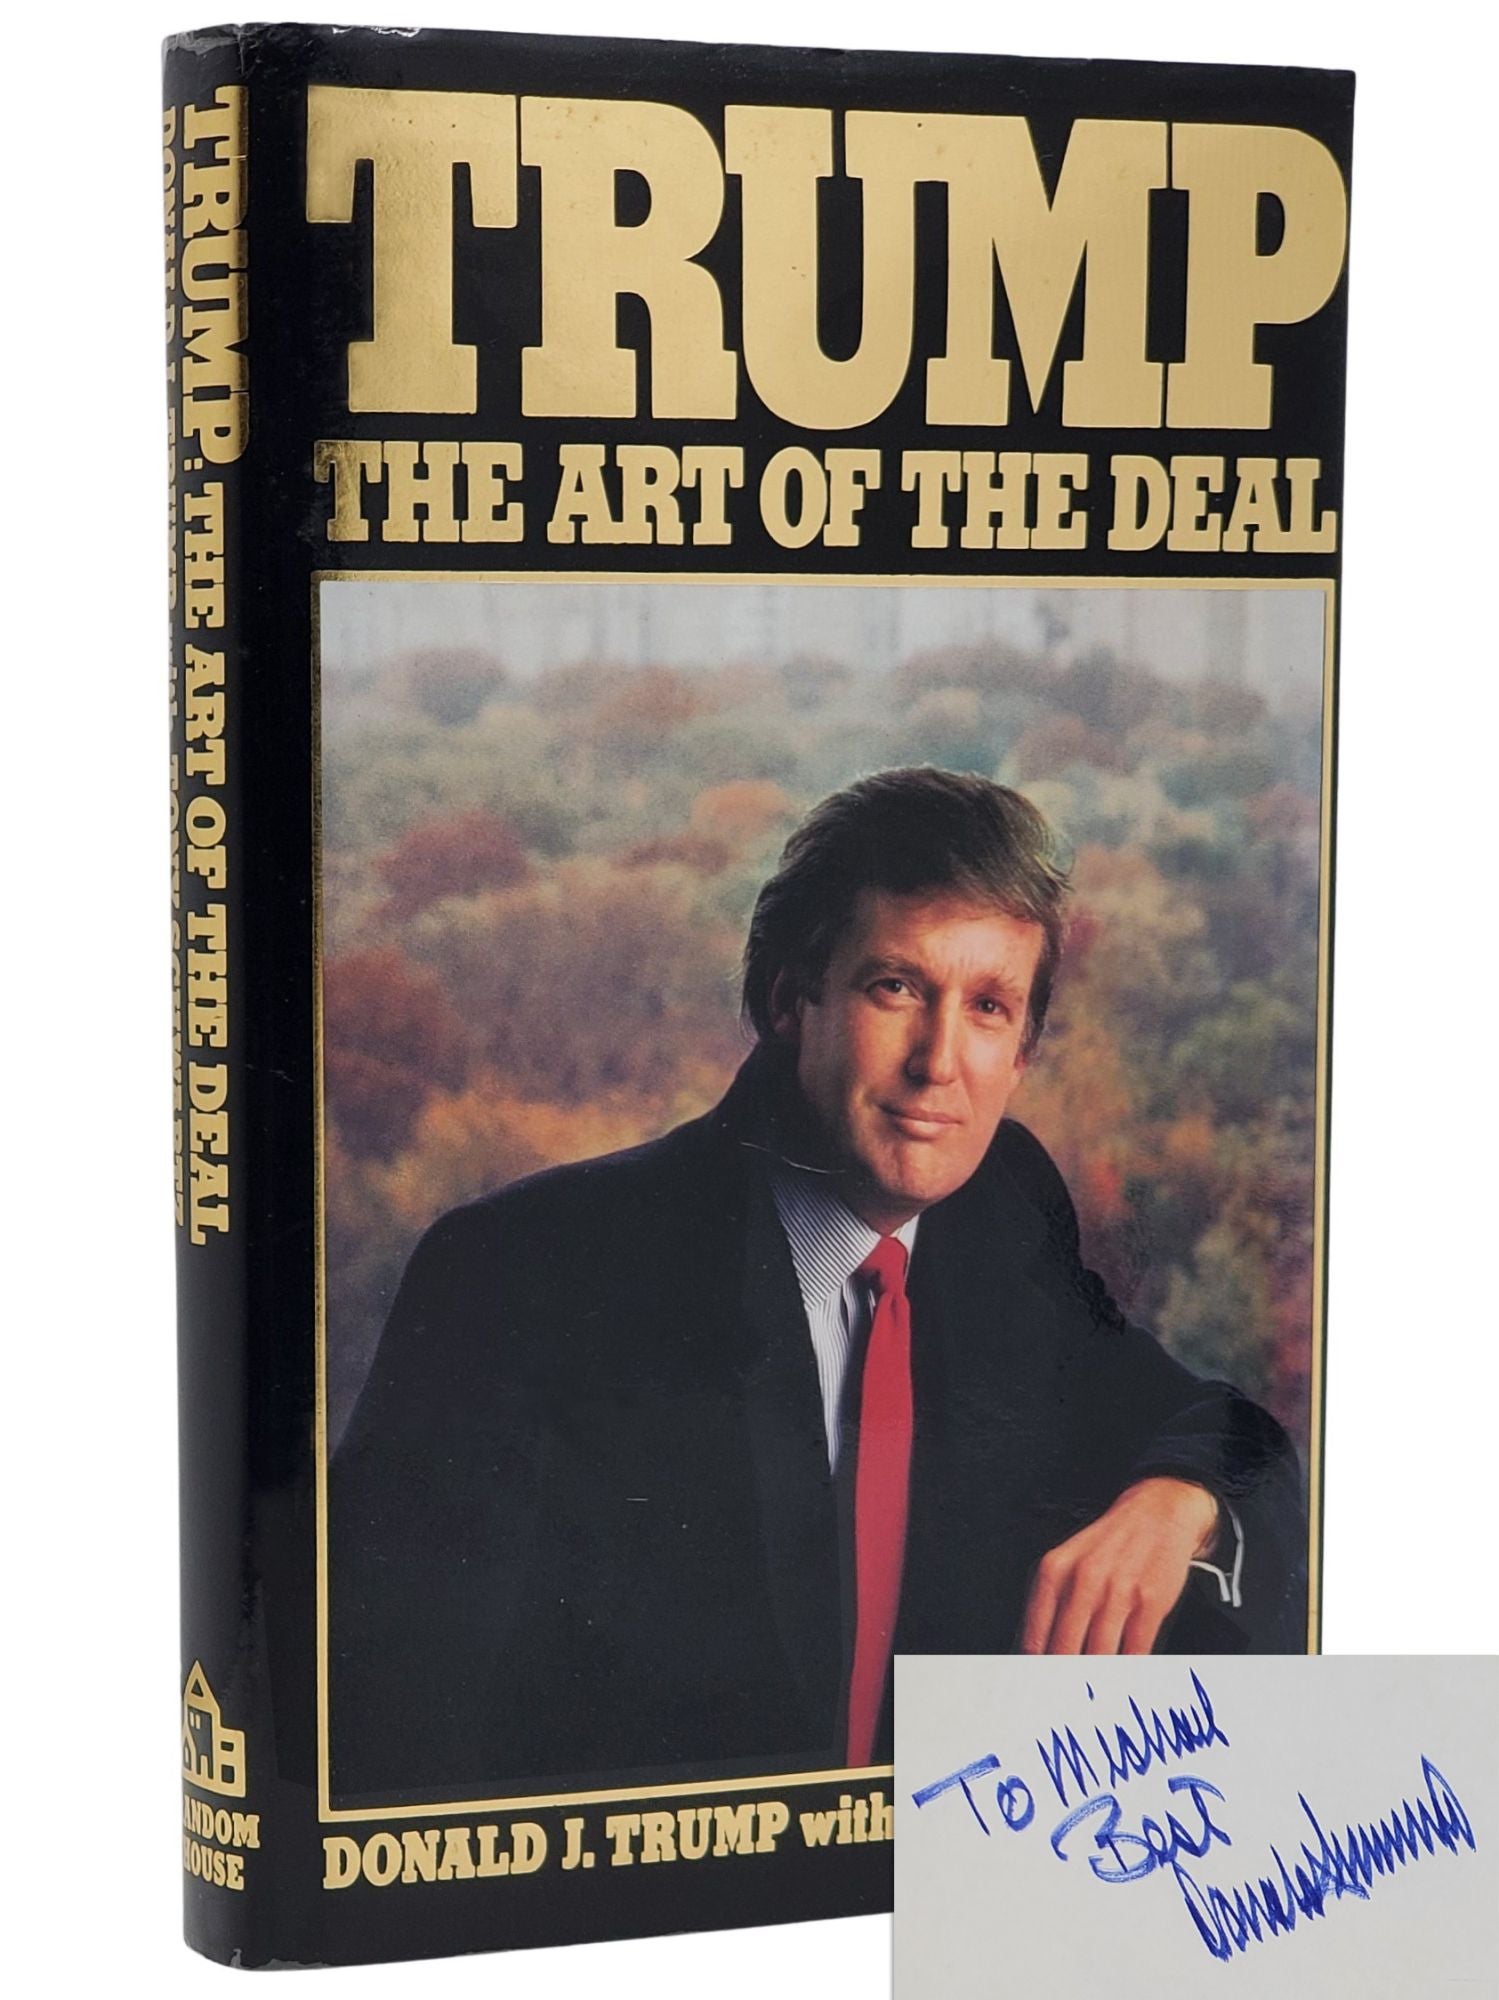 [Book #50748] TRUMP: THE ART OF THE DEAL. Donald J. Trump, Tony J. Schwartz.